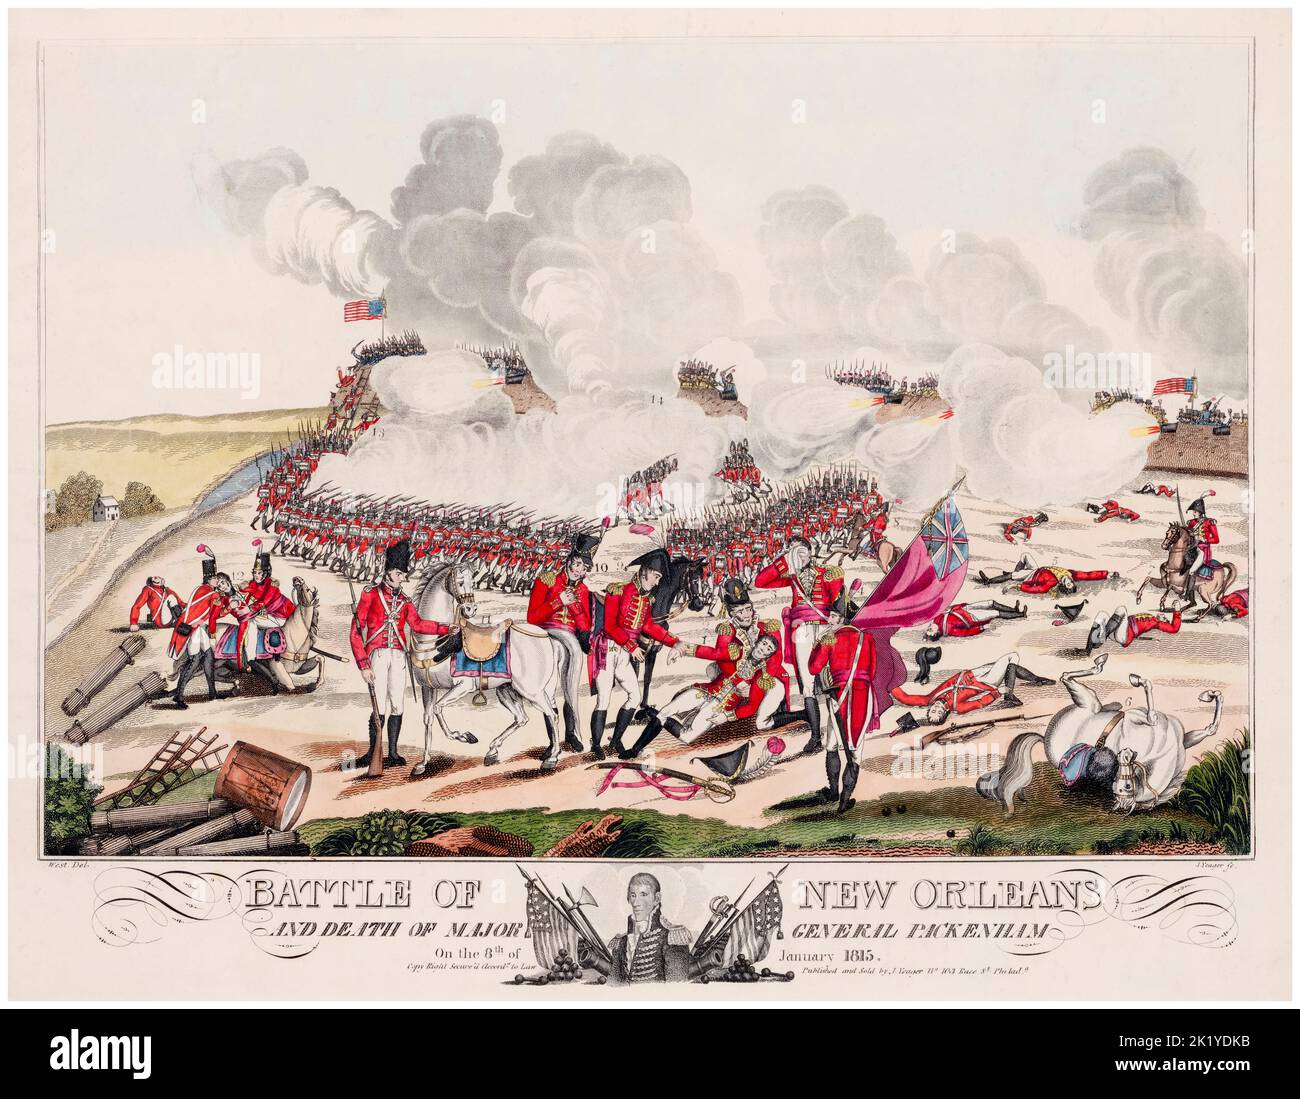 La bataille de la Nouvelle-Orléans et la mort du général de division Packenham (sic) le 8th janvier 1815, gravure en aquatint de William Edward West (artiste) et Joseph Yeager (graveur), 1817 Banque D'Images